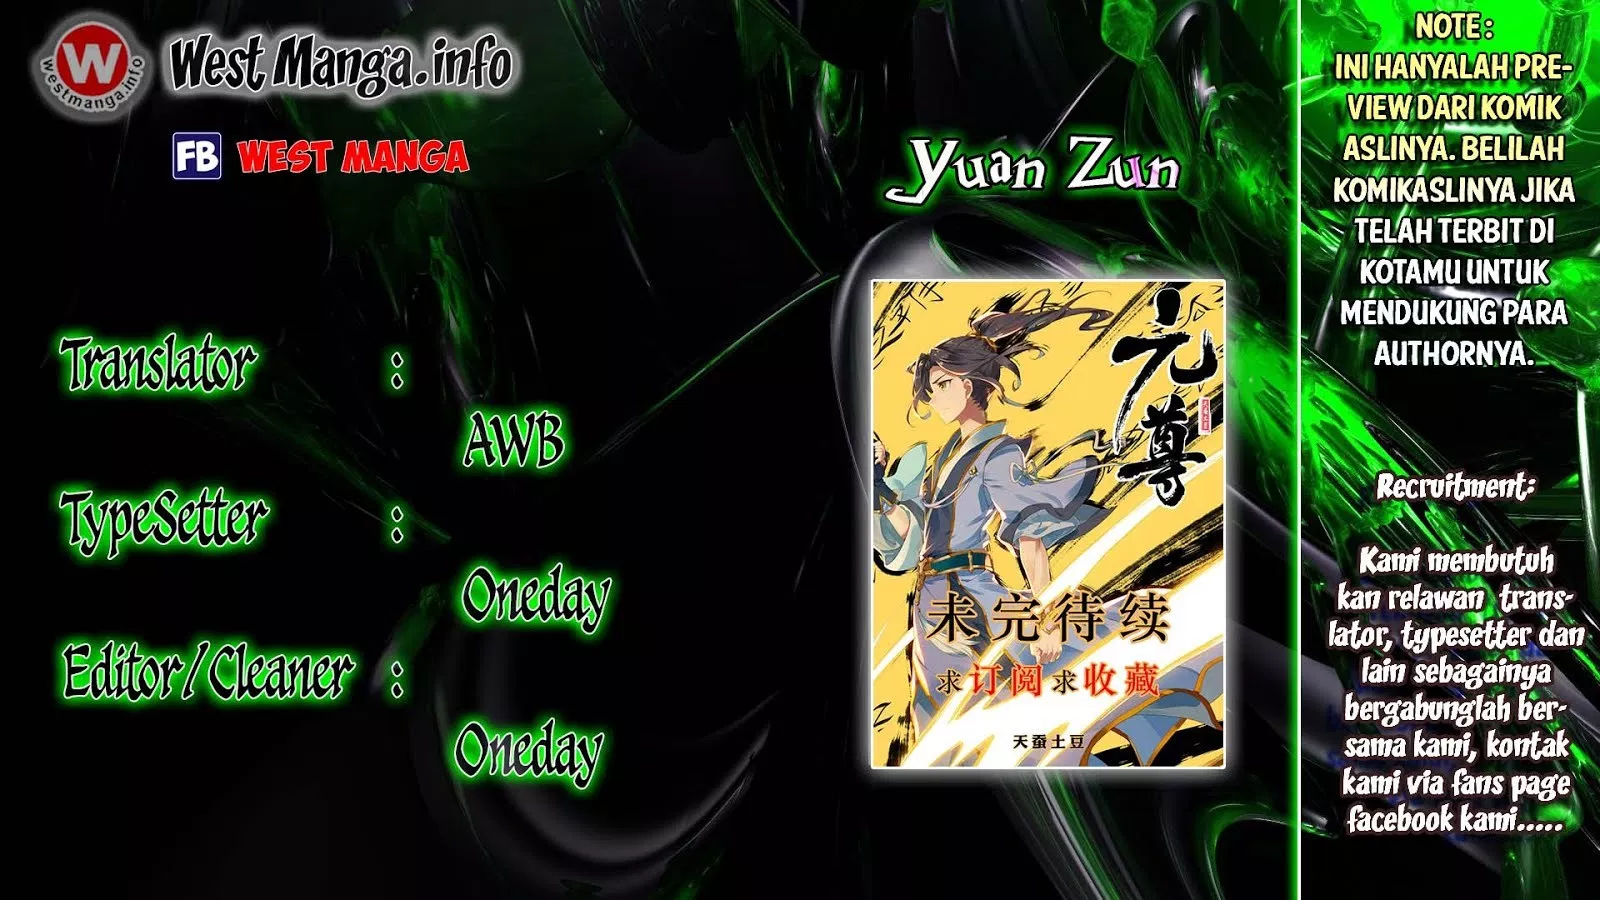 Yuan Zun Chapter 3